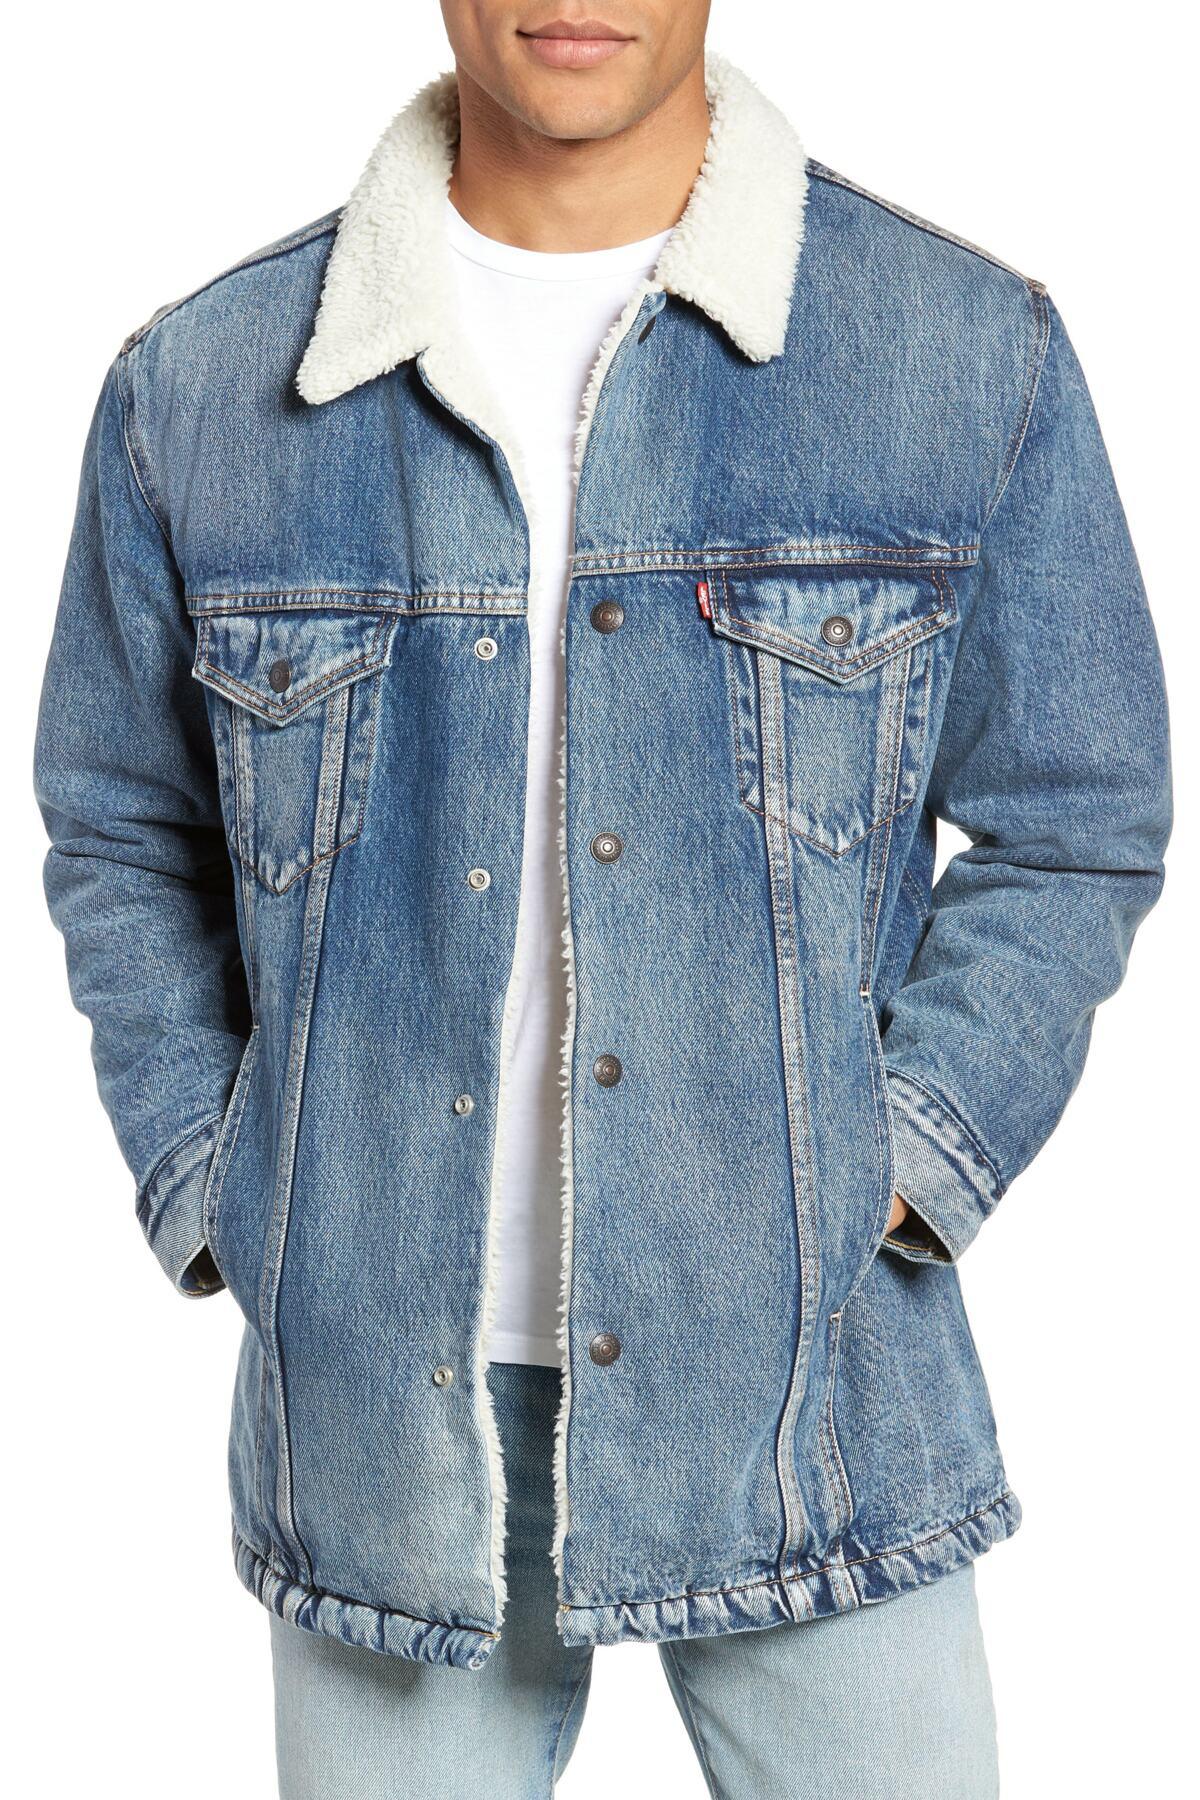 Levi's Fleece (r) Long Faux Fur Lined Trucker Jacket in Blue for Men - Lyst